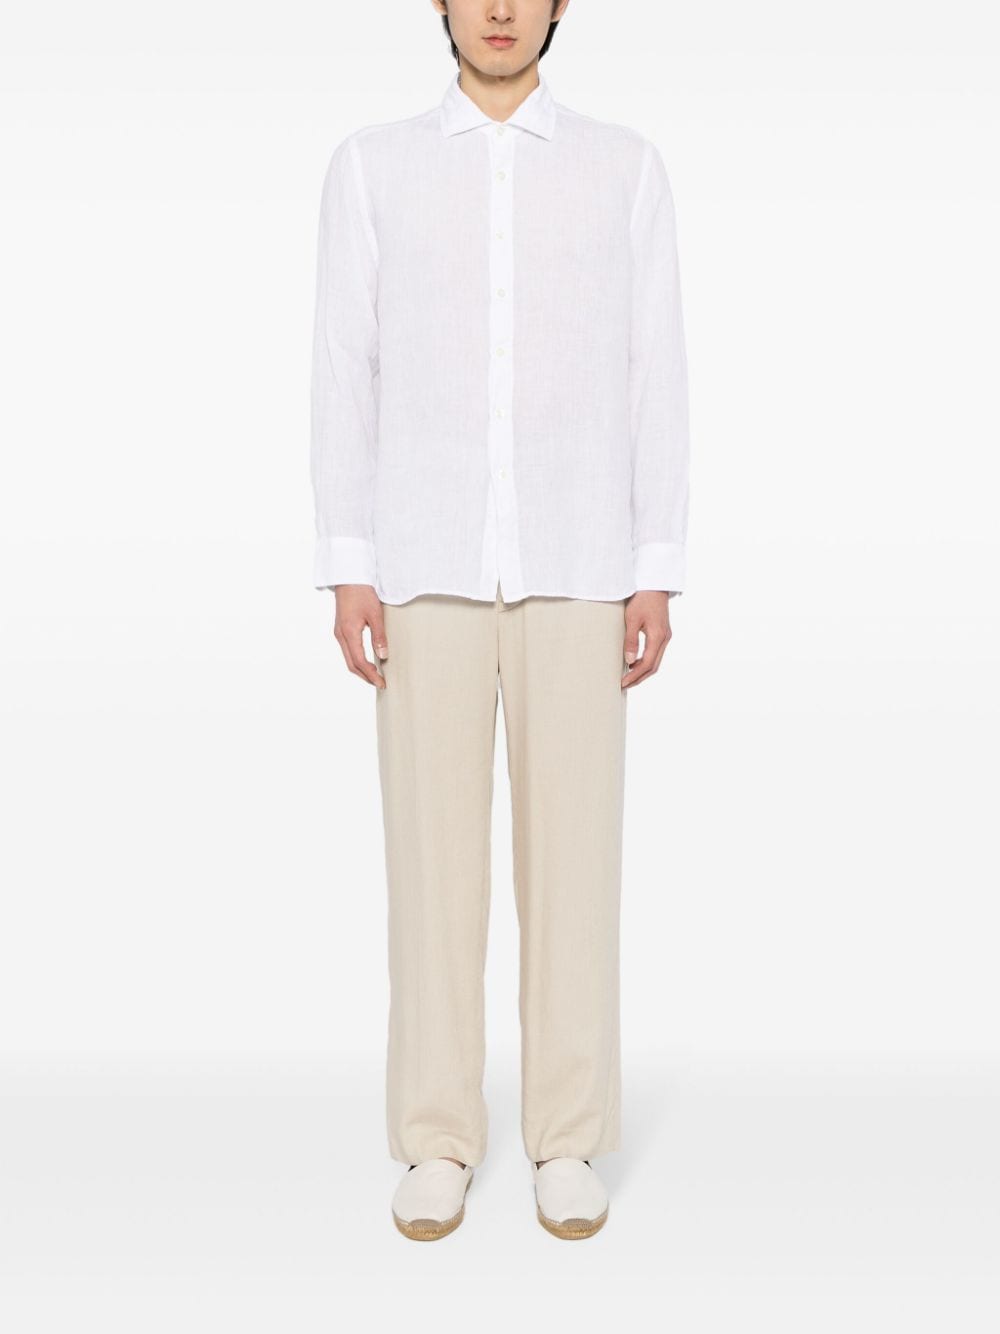 120% Lino long-sleeved linen shirt - 000050 White